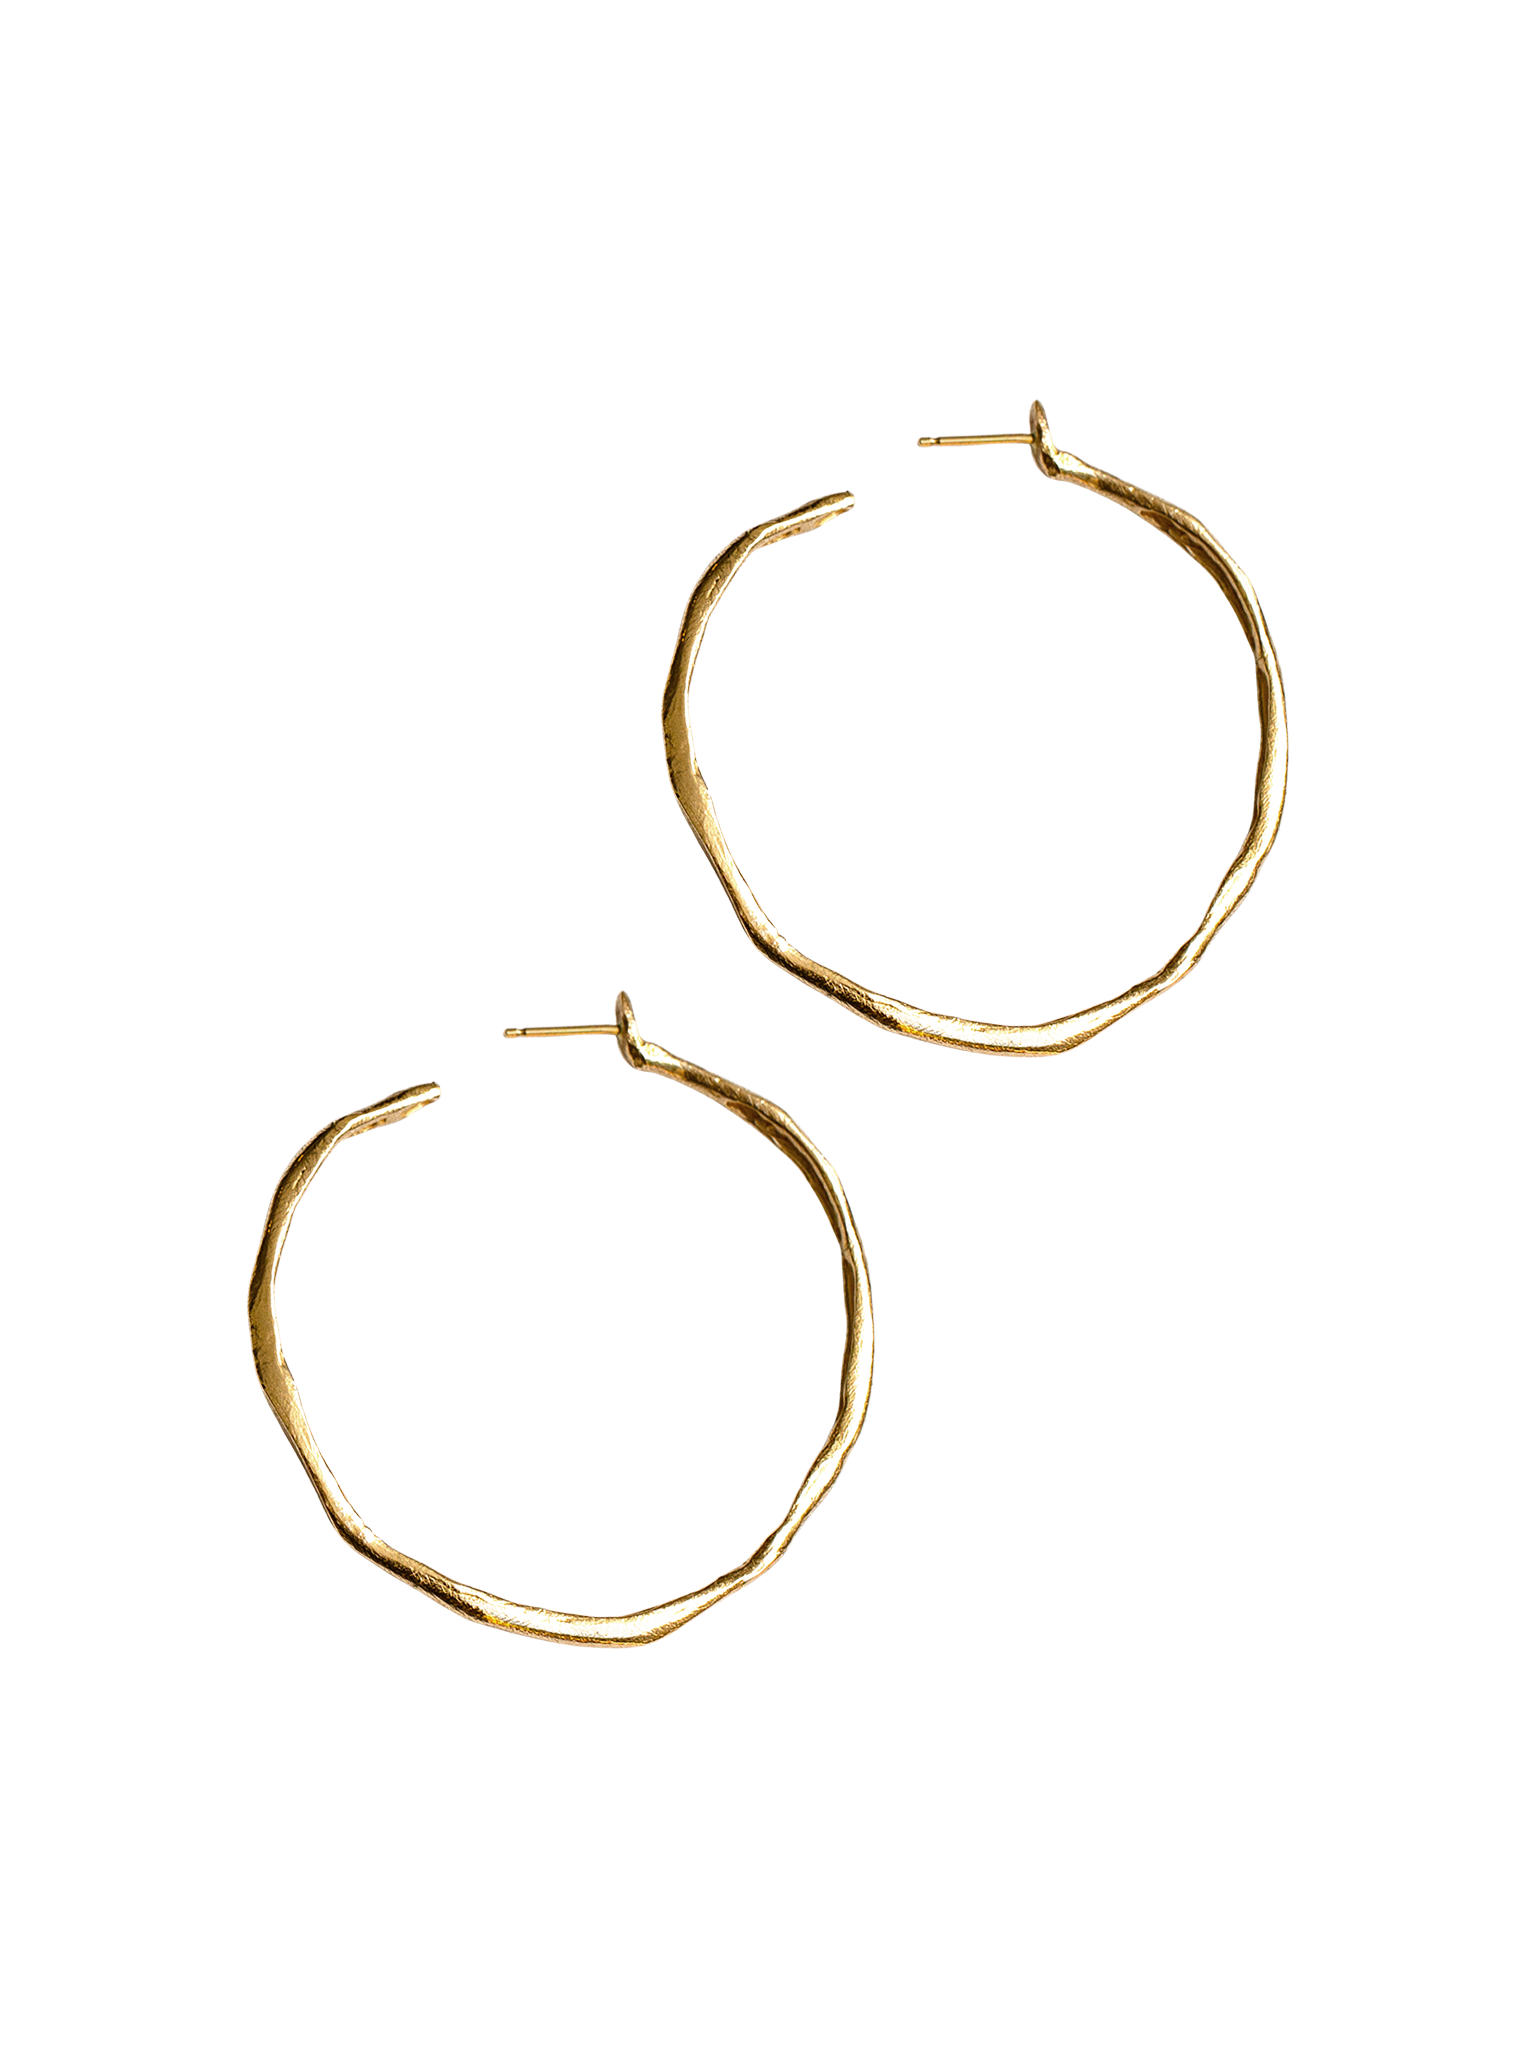 Sulu hoop earrings 14k gold